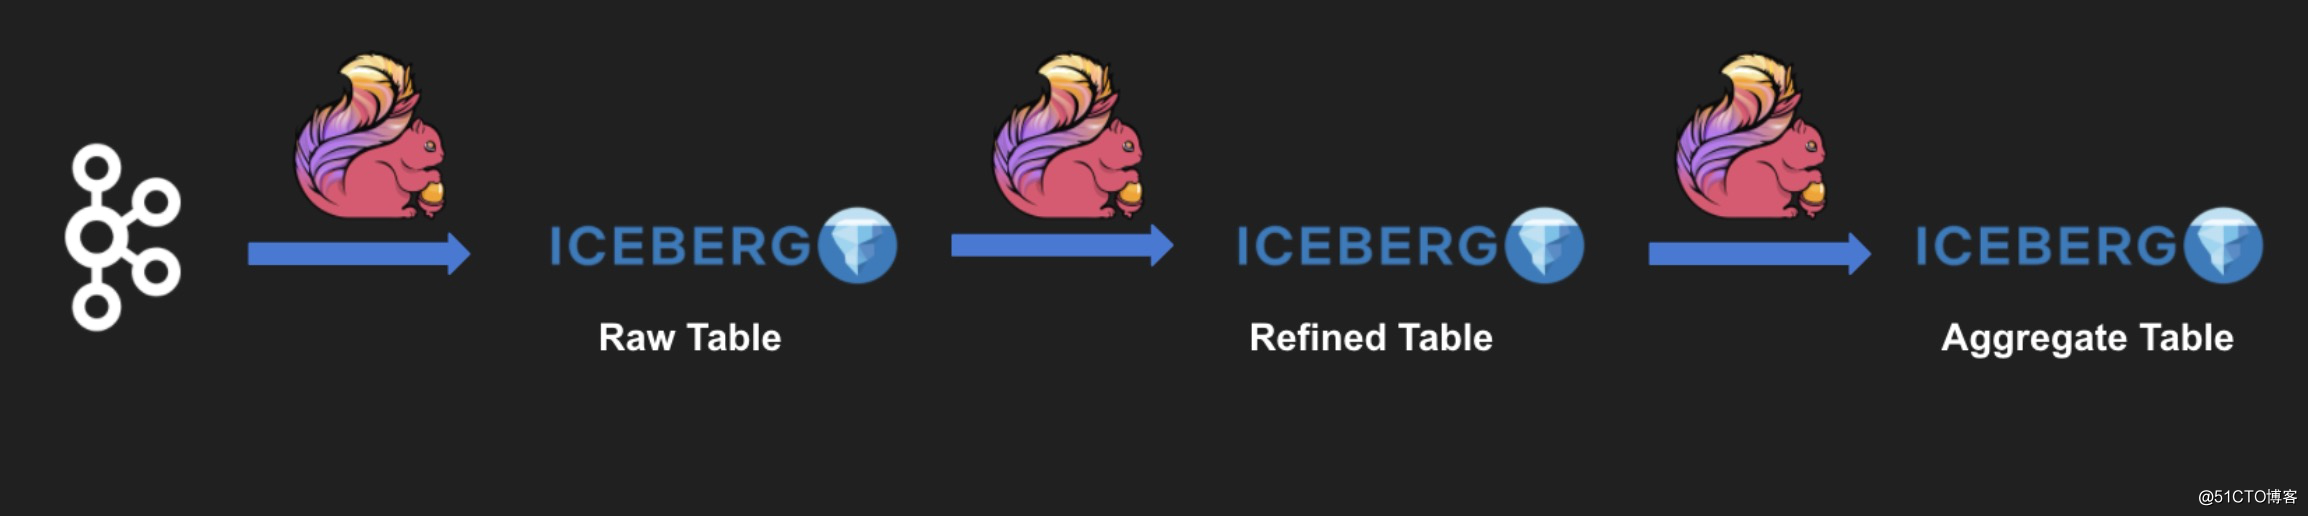 深度集成 Flink: Apache Iceberg 0.11.0 最新功能解读